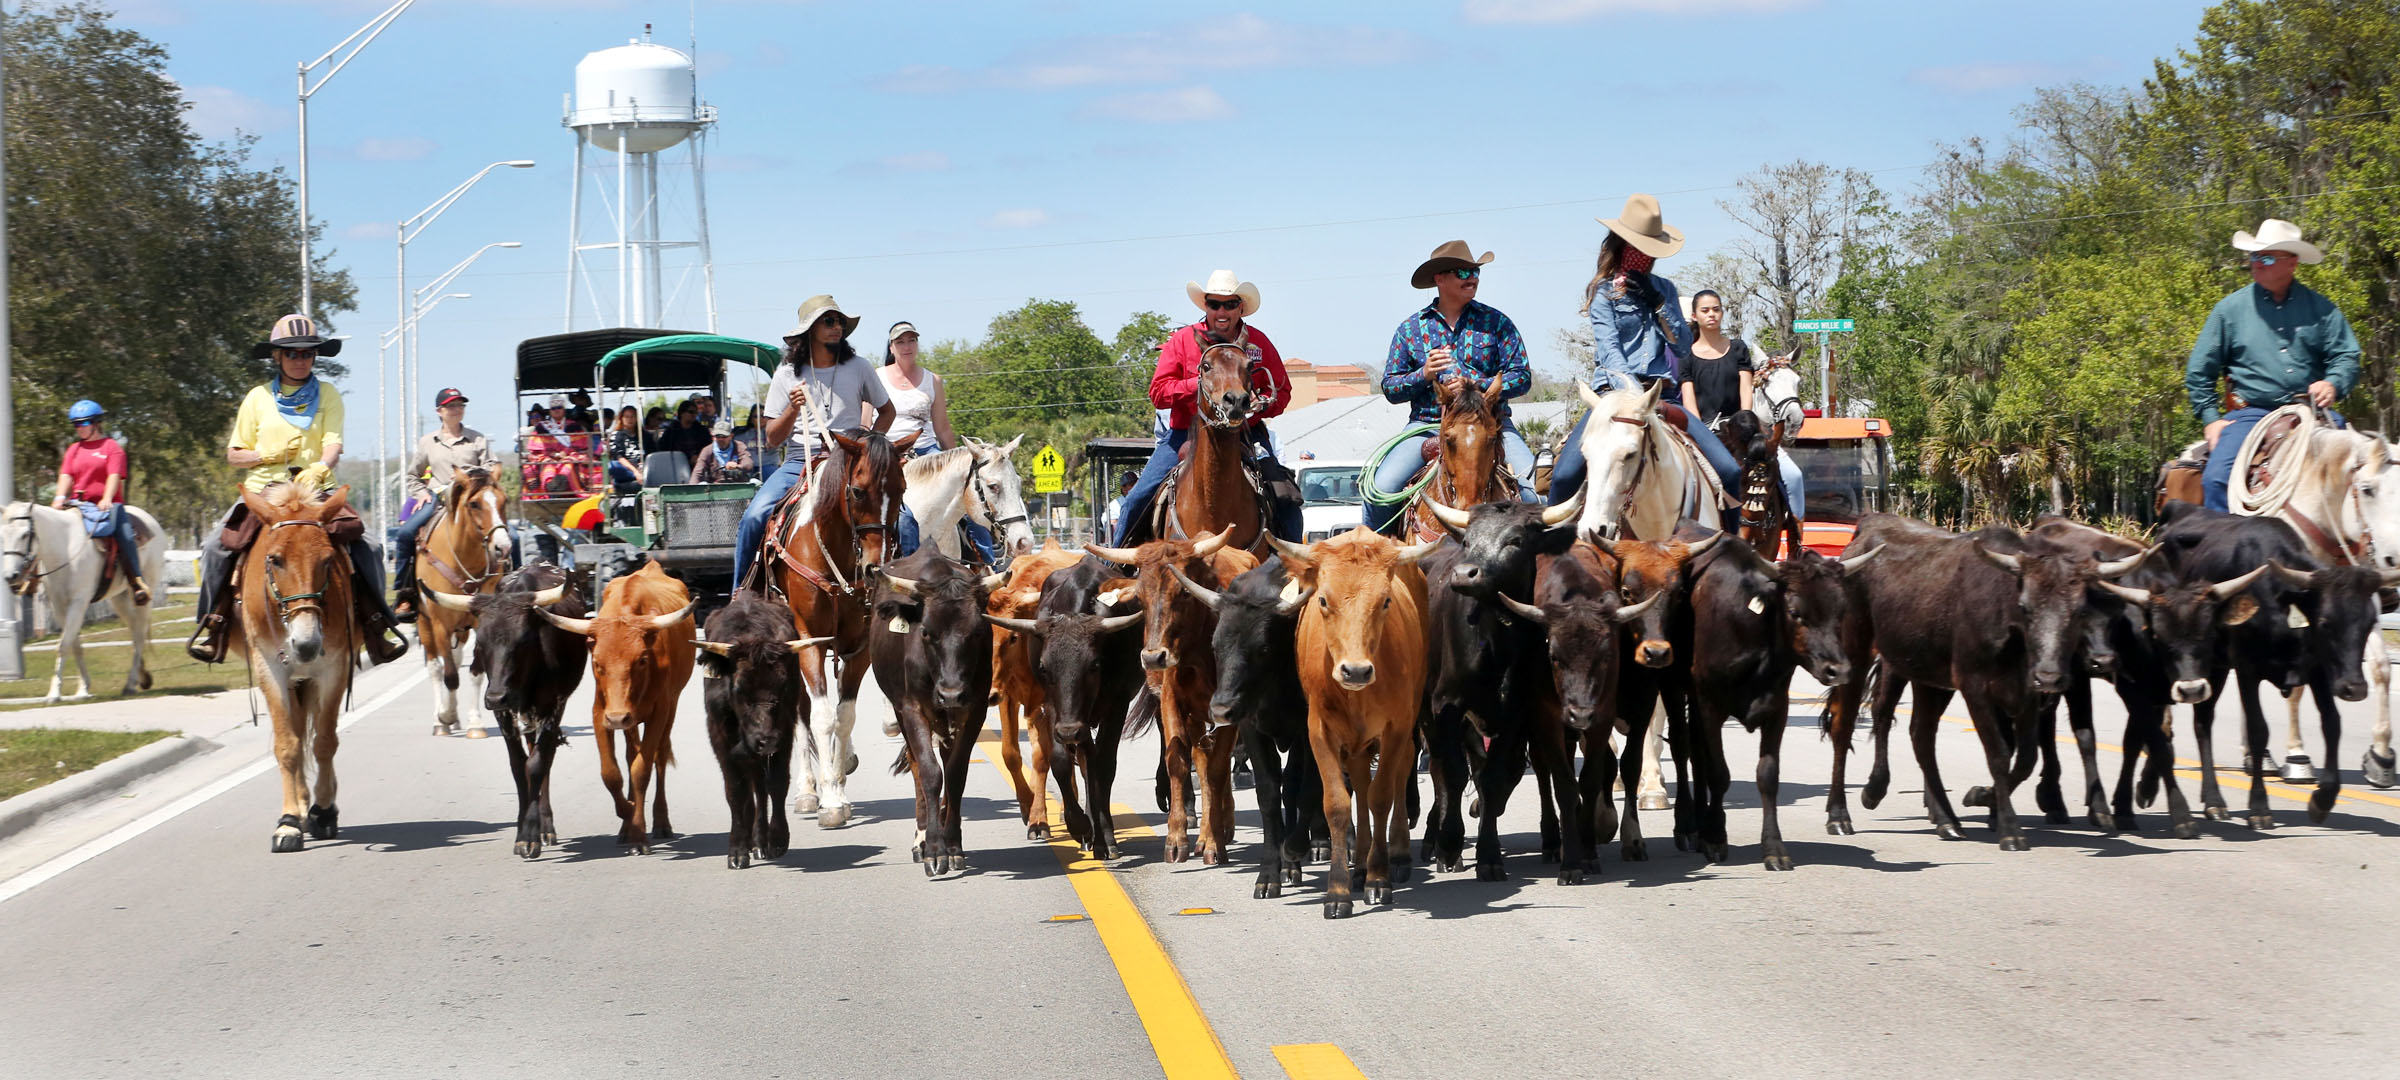 Cattle drive evokes fond memories of Morgan Smith • The Seminole Tribune